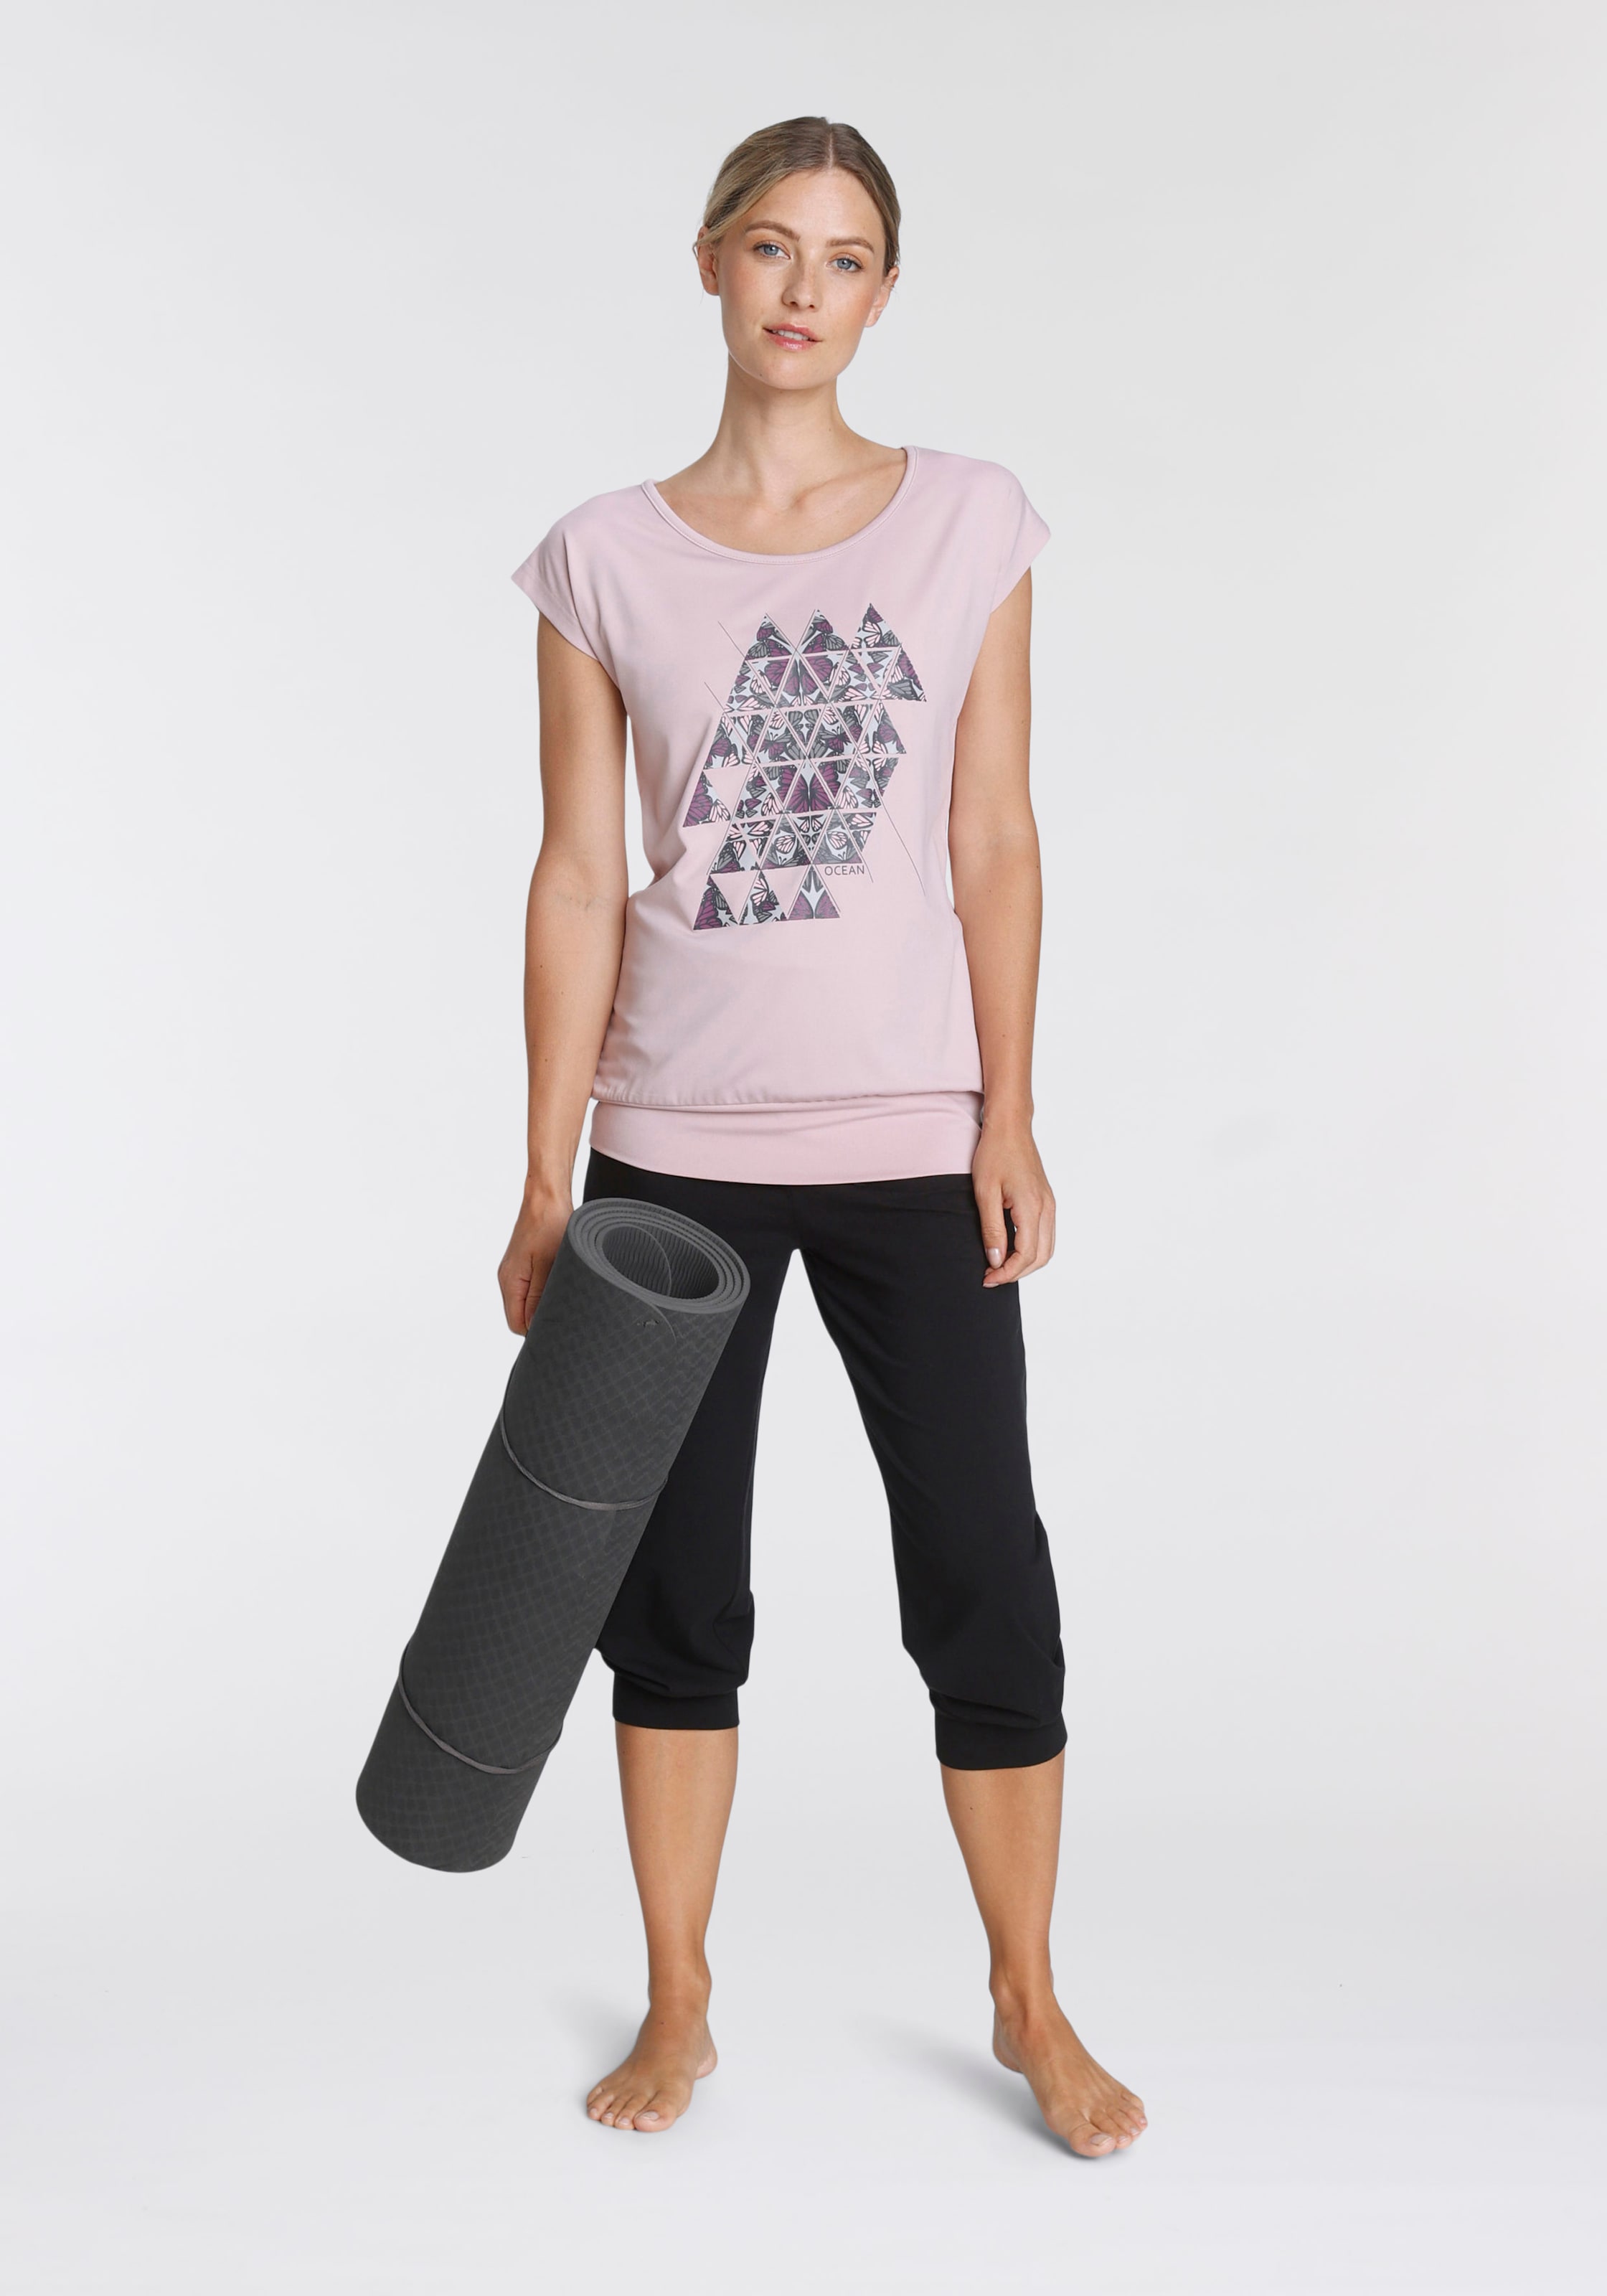 Yoga-Kleidung online kaufen | Attraktive Yogawear bei Quelle | Trainingshosen